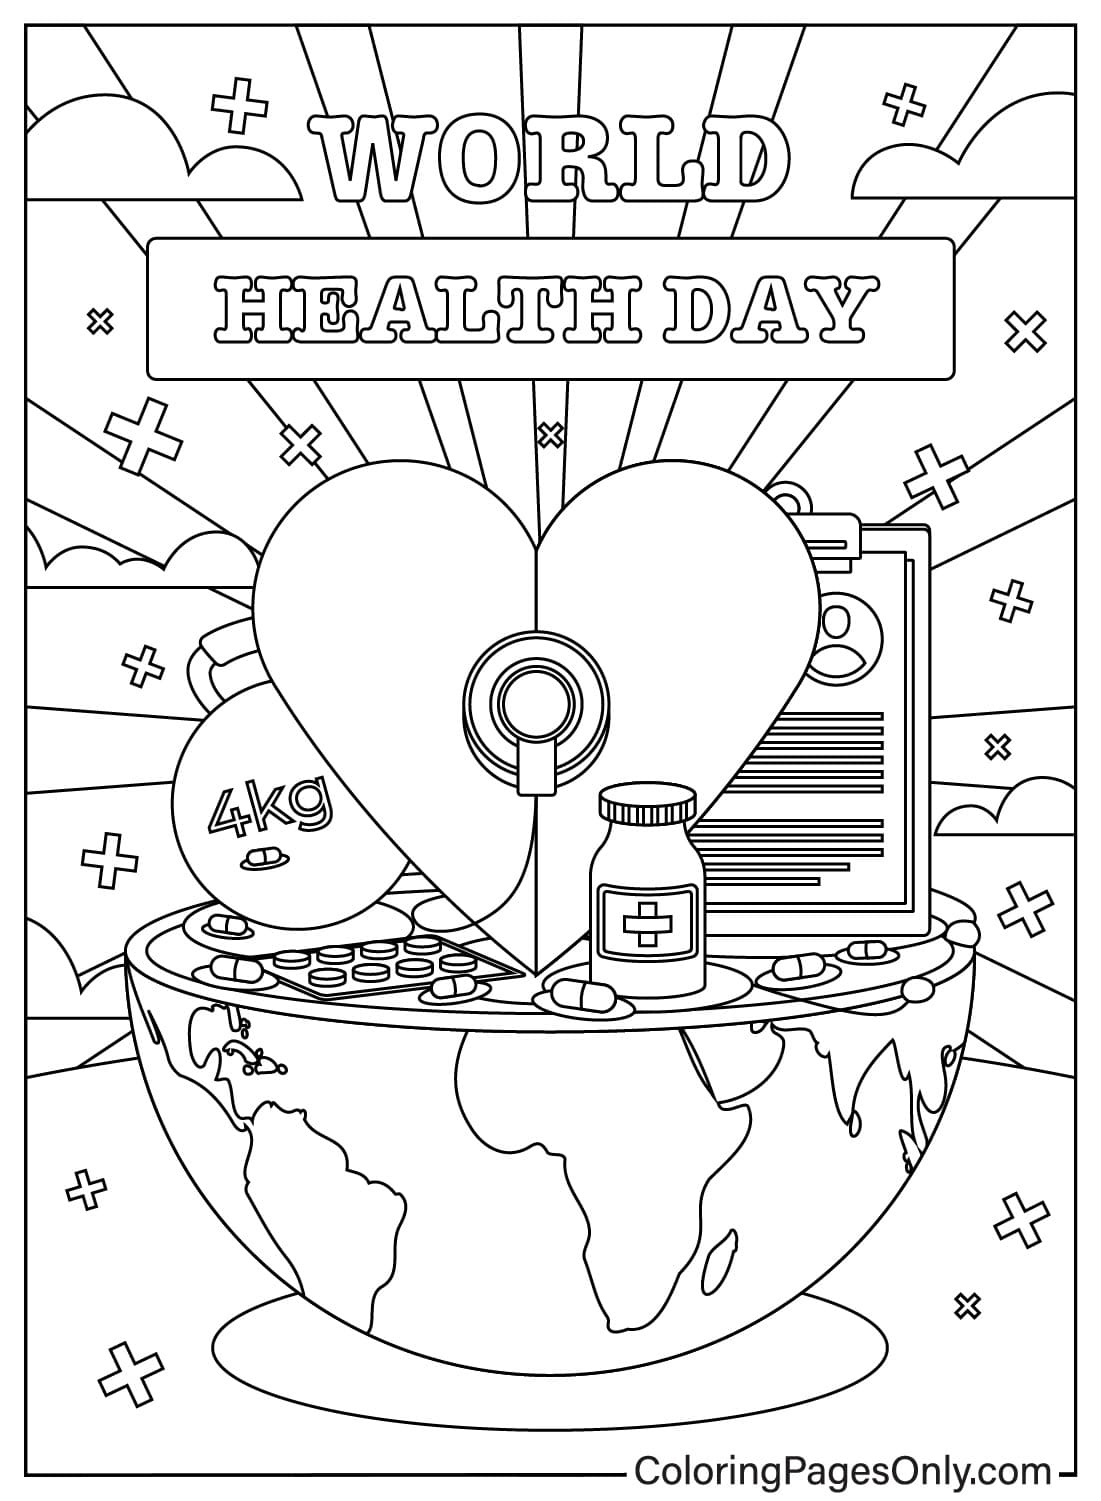 صفحات تلوين مجانية ليوم الصحة العالمي للأطفال والكبار من يوم الصحة العالمي